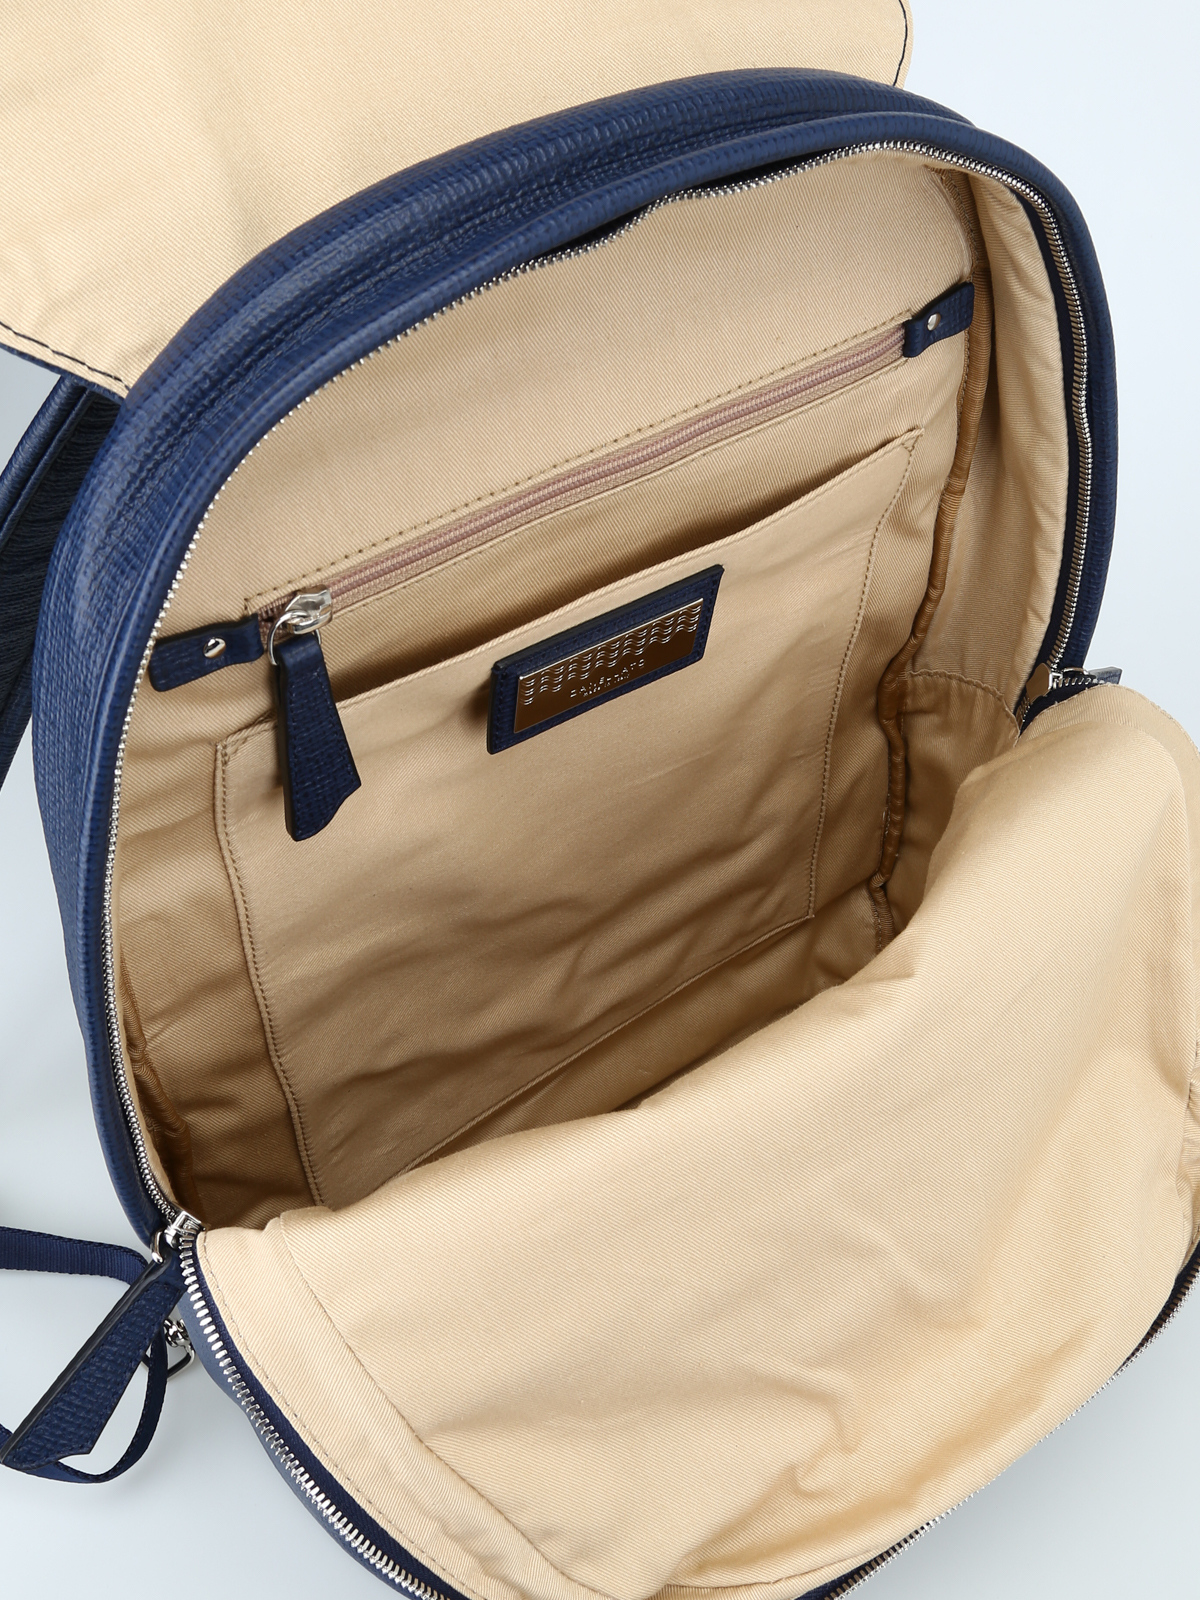 Backpacks Zanellato - Ildo Curturo blue leather backpack 